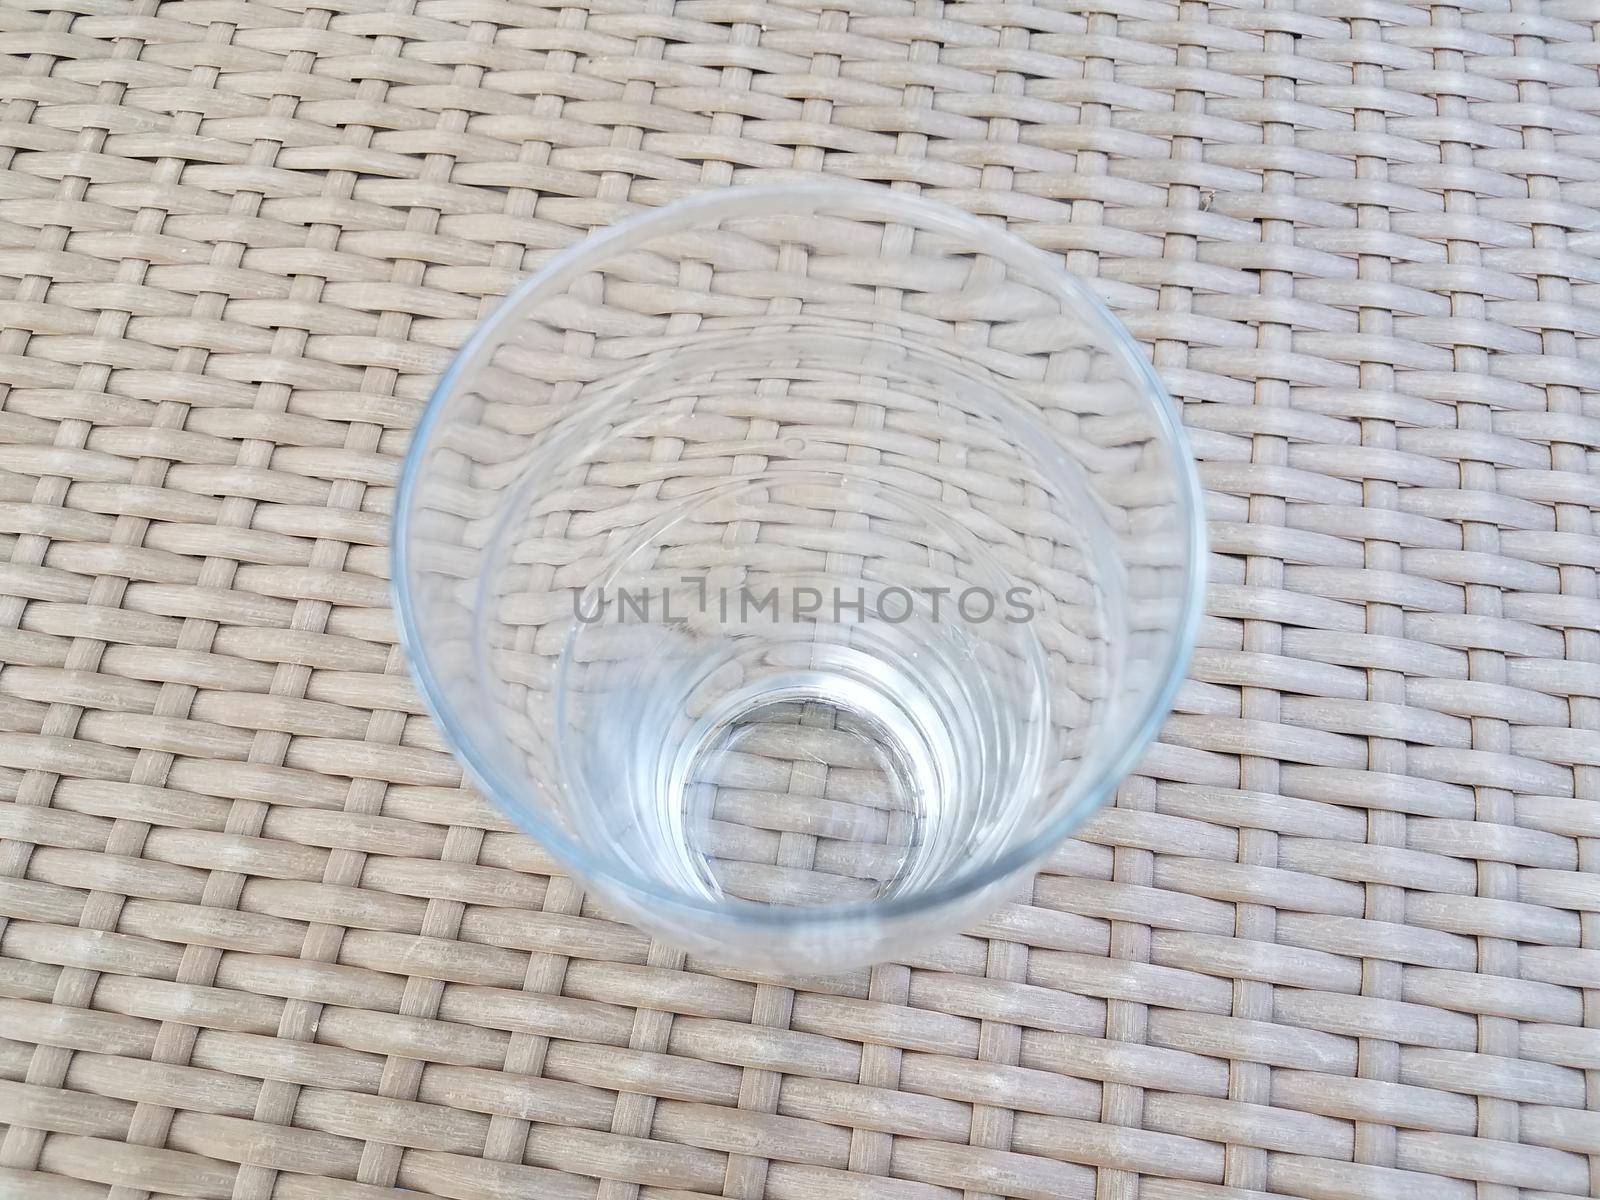 drinking glass on wicker table by stockphotofan1